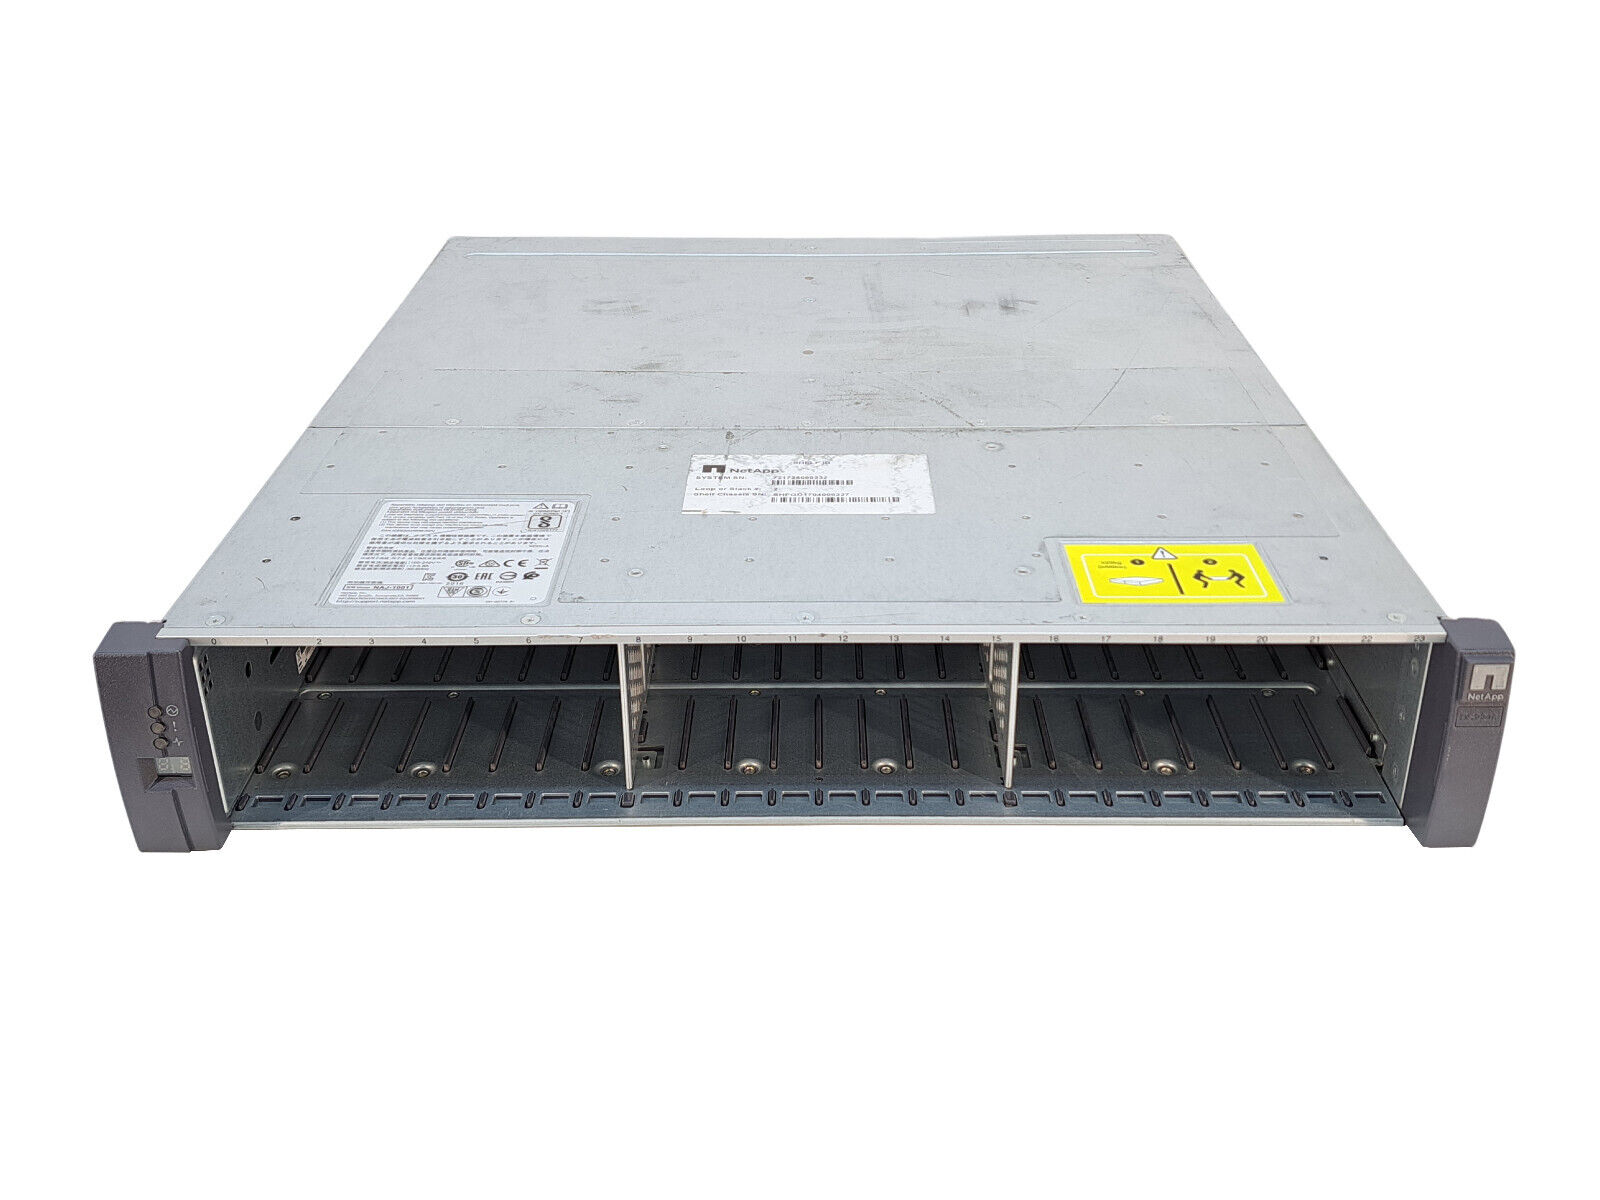 NetApp NAJ-1001 24 Bay SFF Storage Array w/ Dual IOM6 6Gb/s SAS Controllers